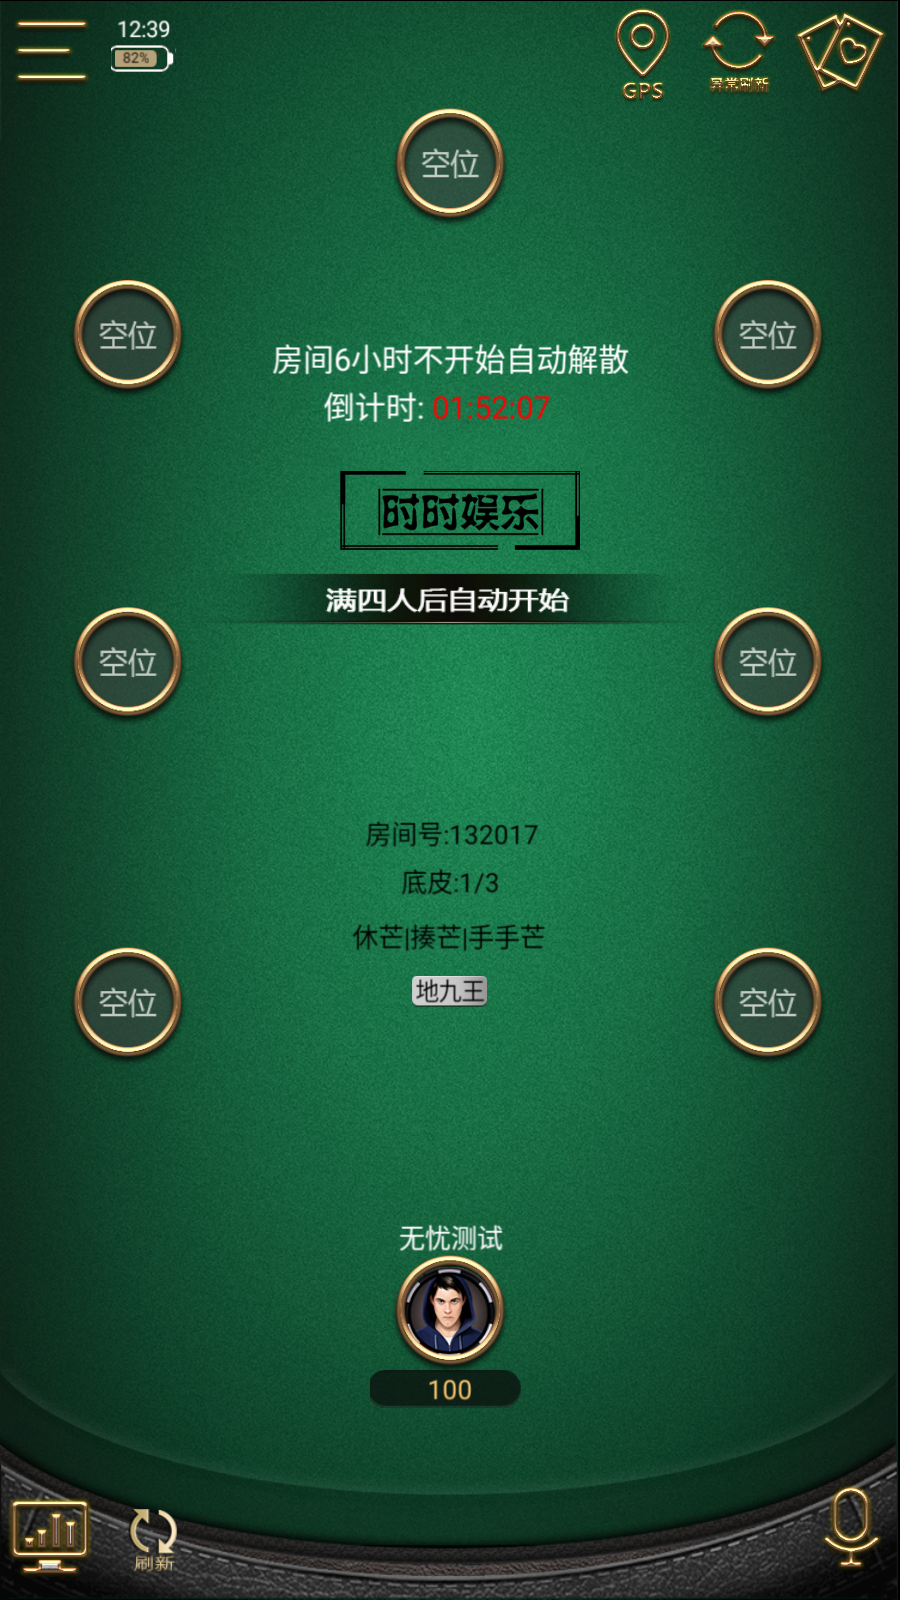 网狐单款扯旋时时娱乐棋牌组件app加h5插图3